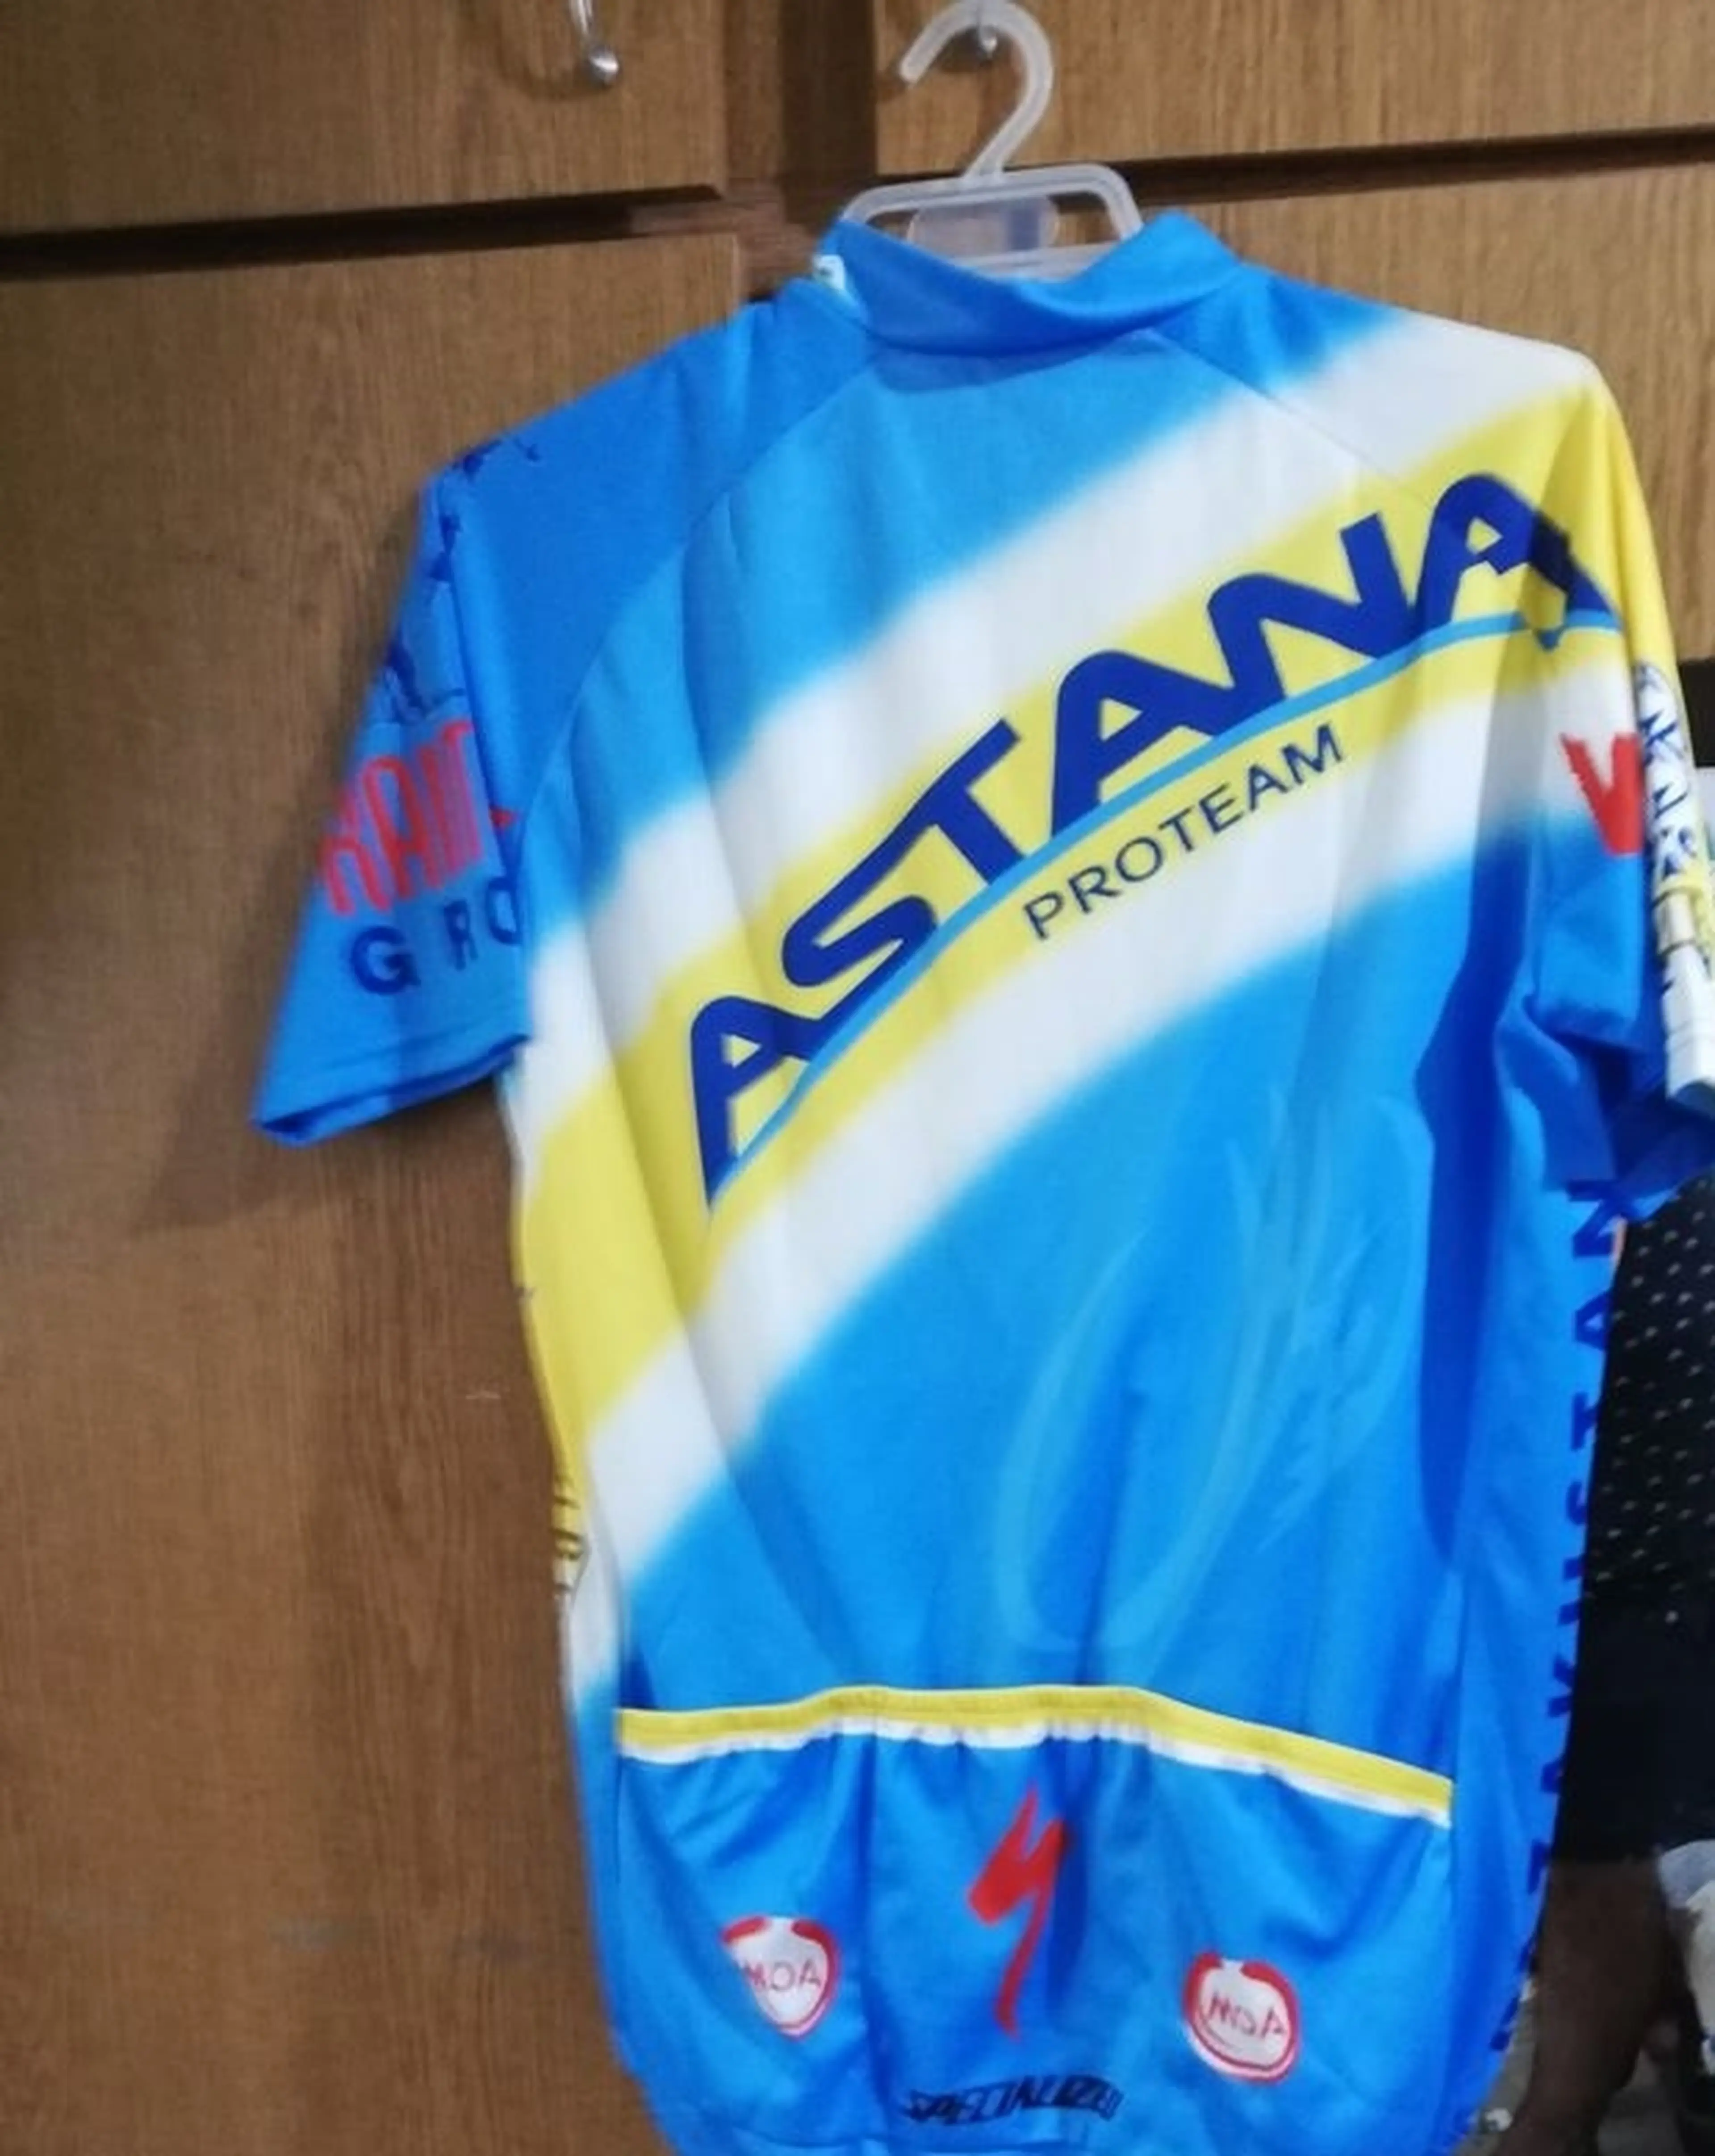 2. Vand echipament team Astana